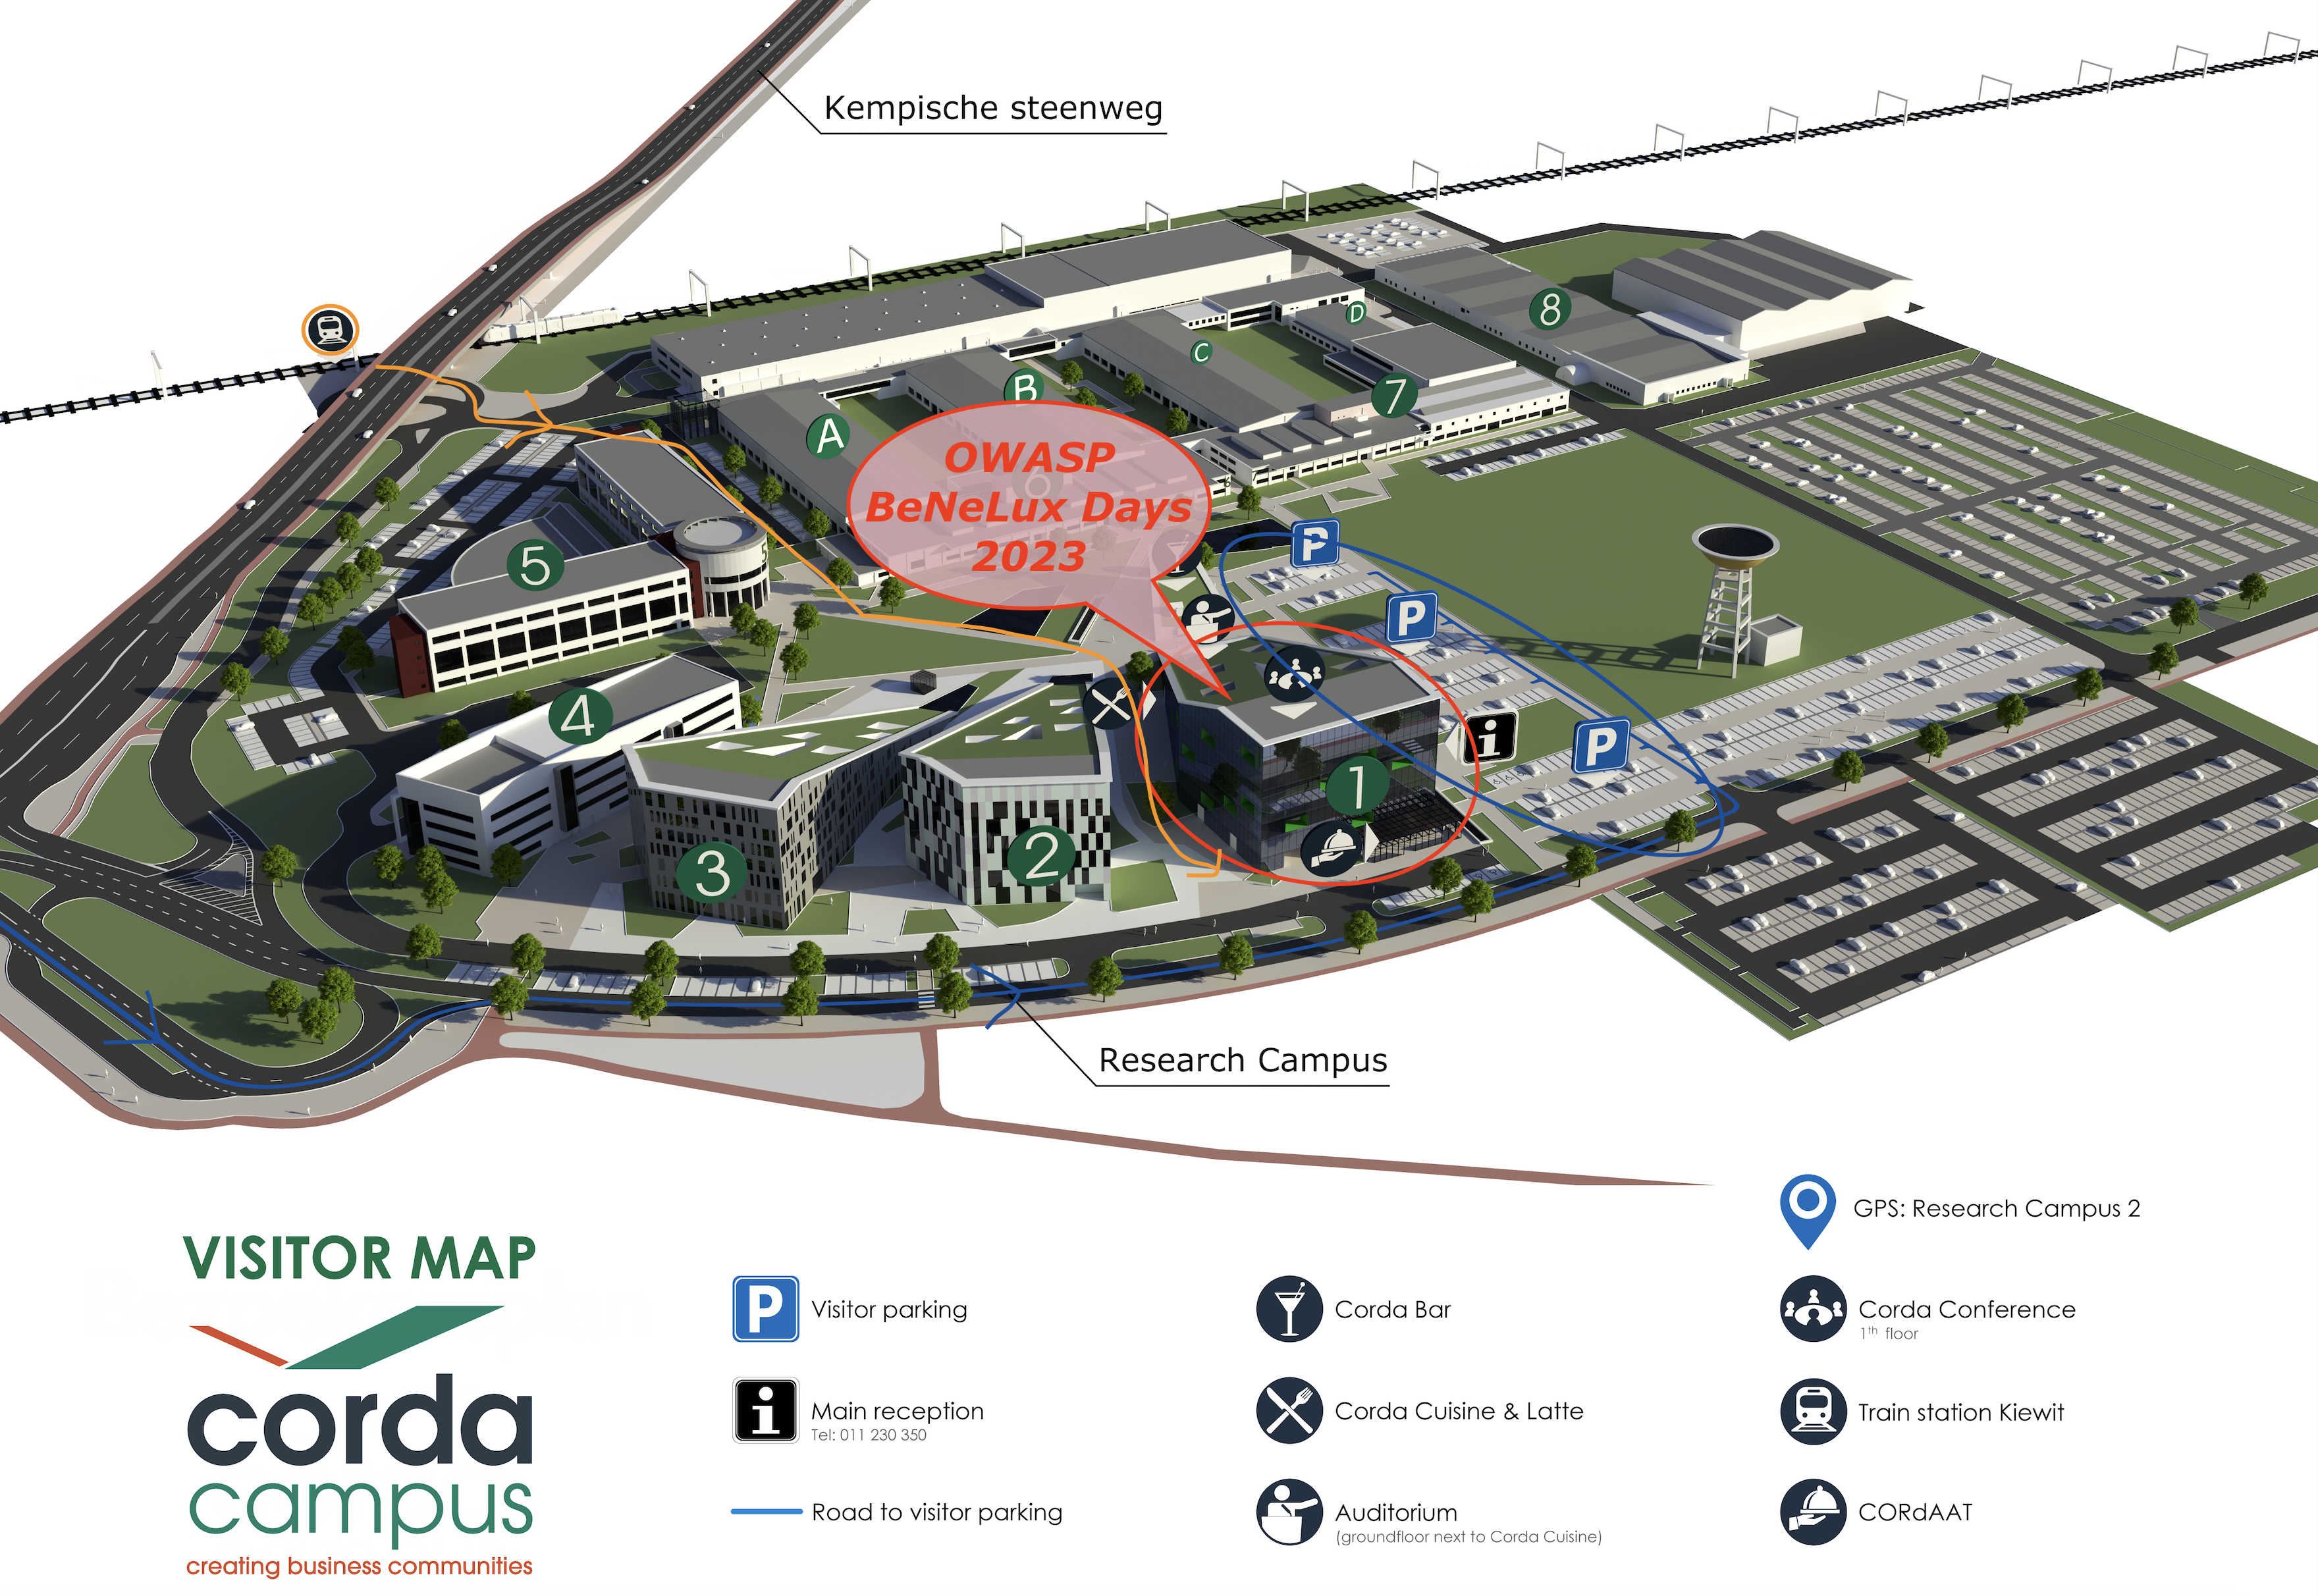 orda Campus Map